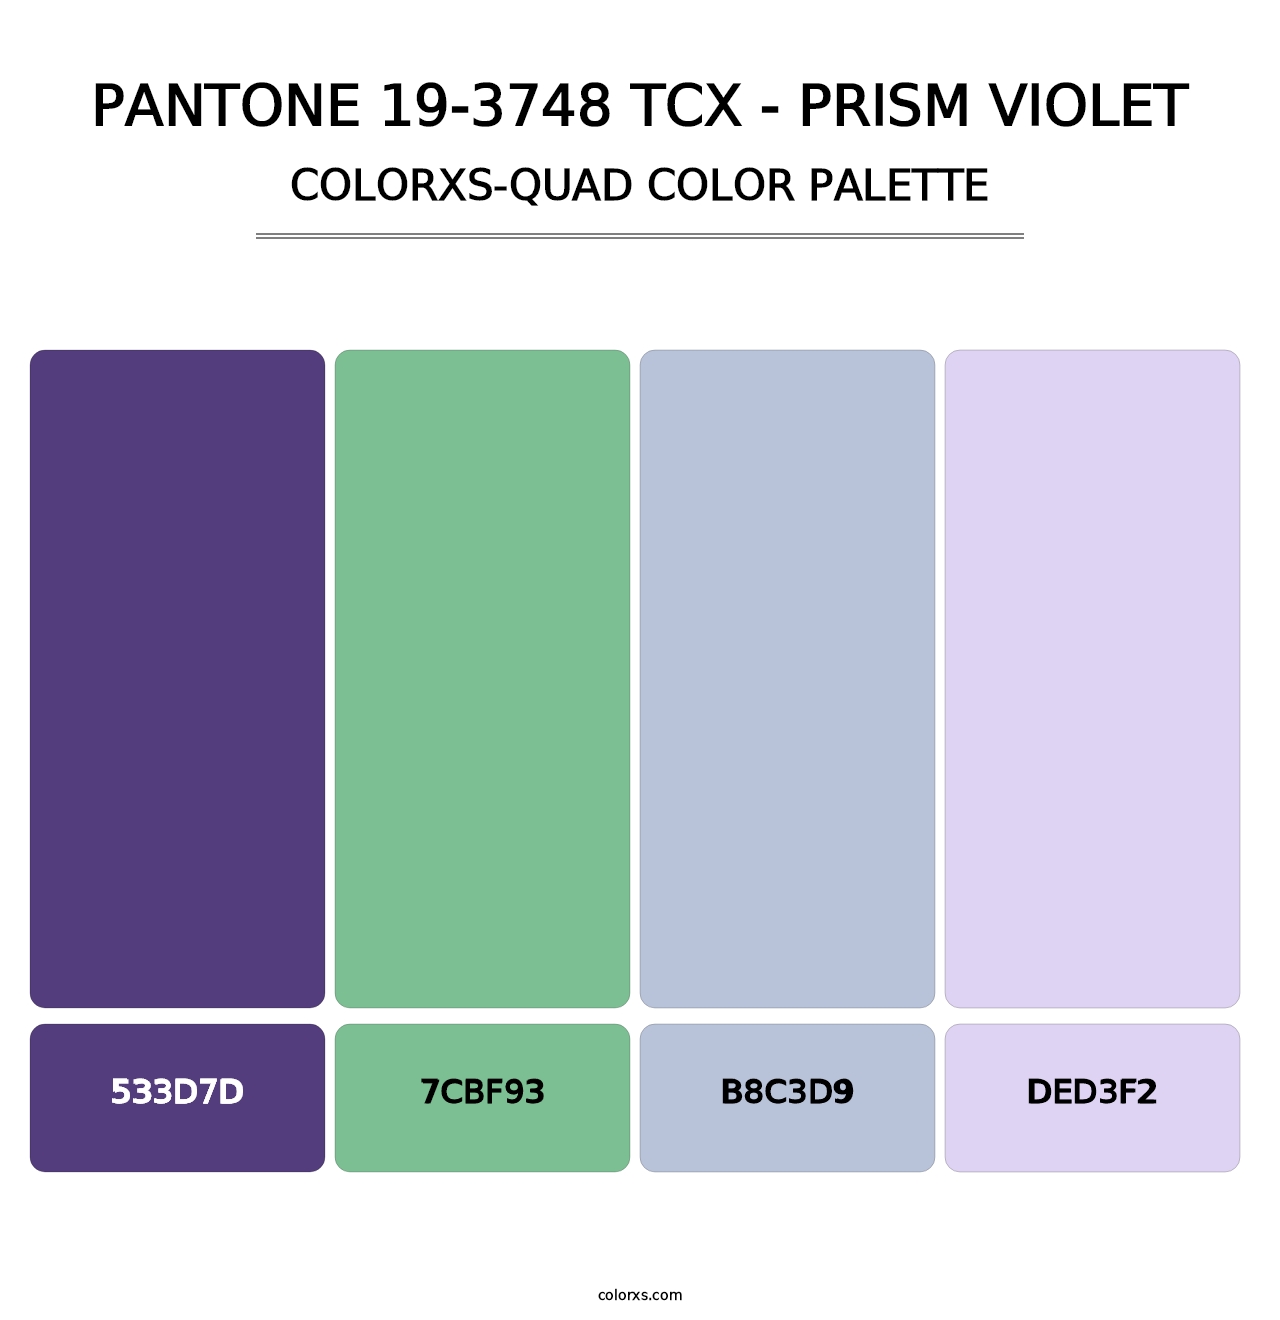 PANTONE 19-3748 TCX - Prism Violet - Colorxs Quad Palette